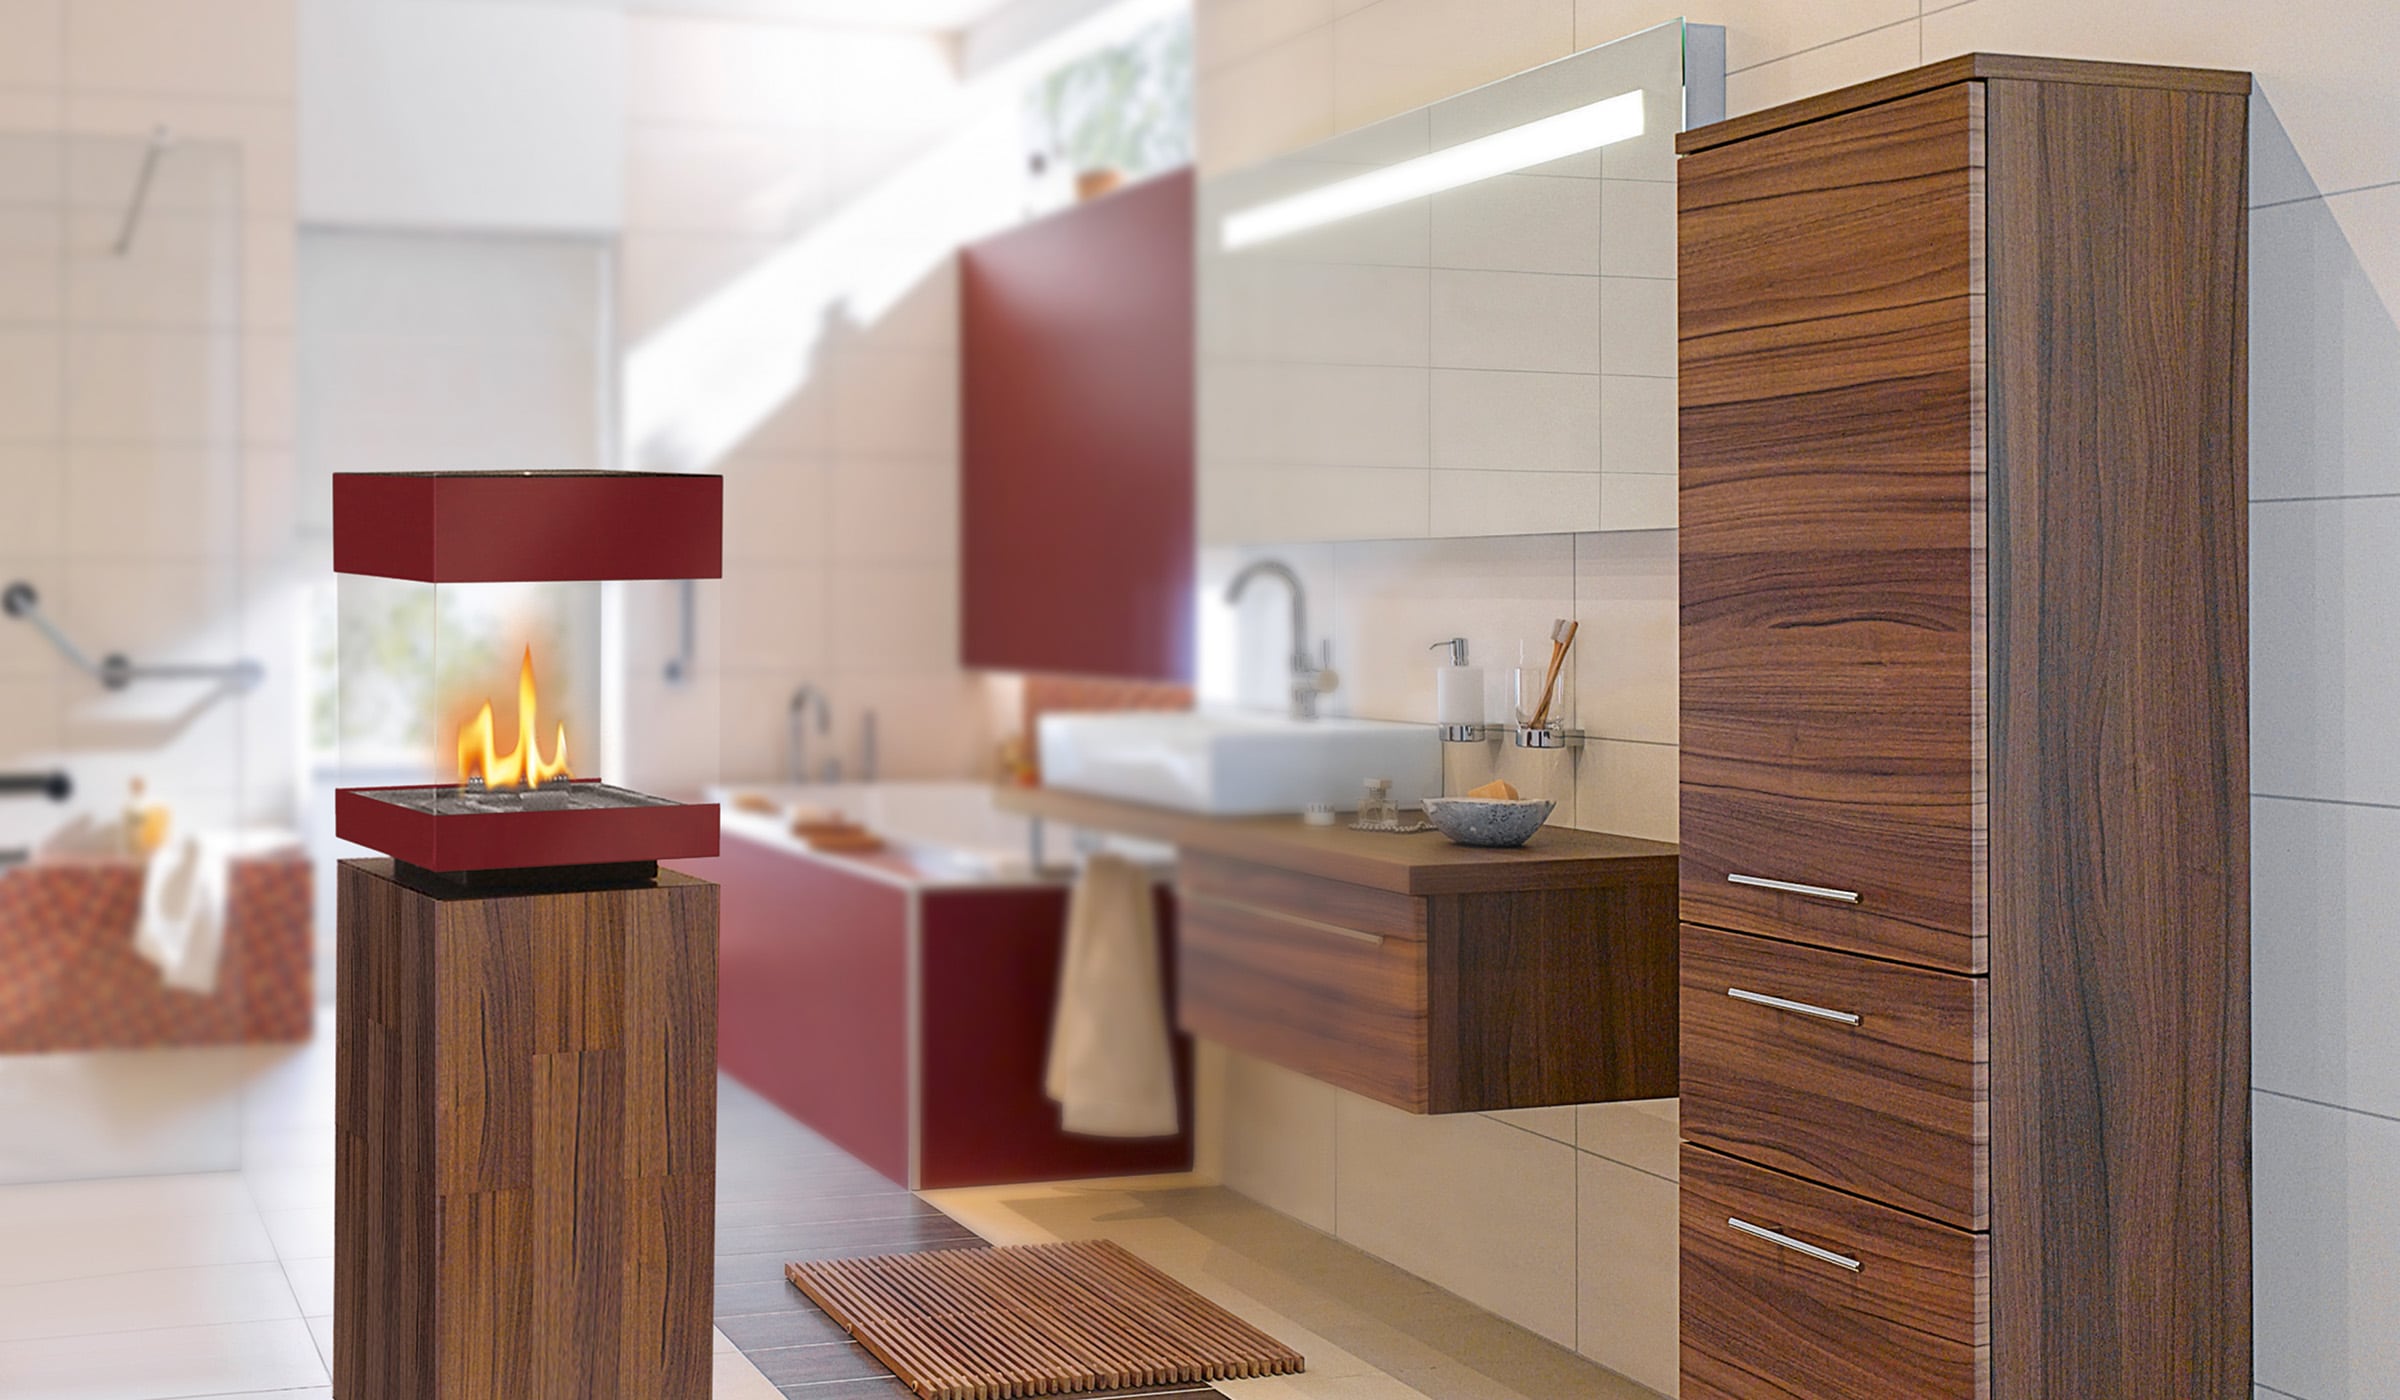 haas-design.at-hotel-und-home-interior-onlineshop-tuev-geprueft-ethanolkamin-turn-stone